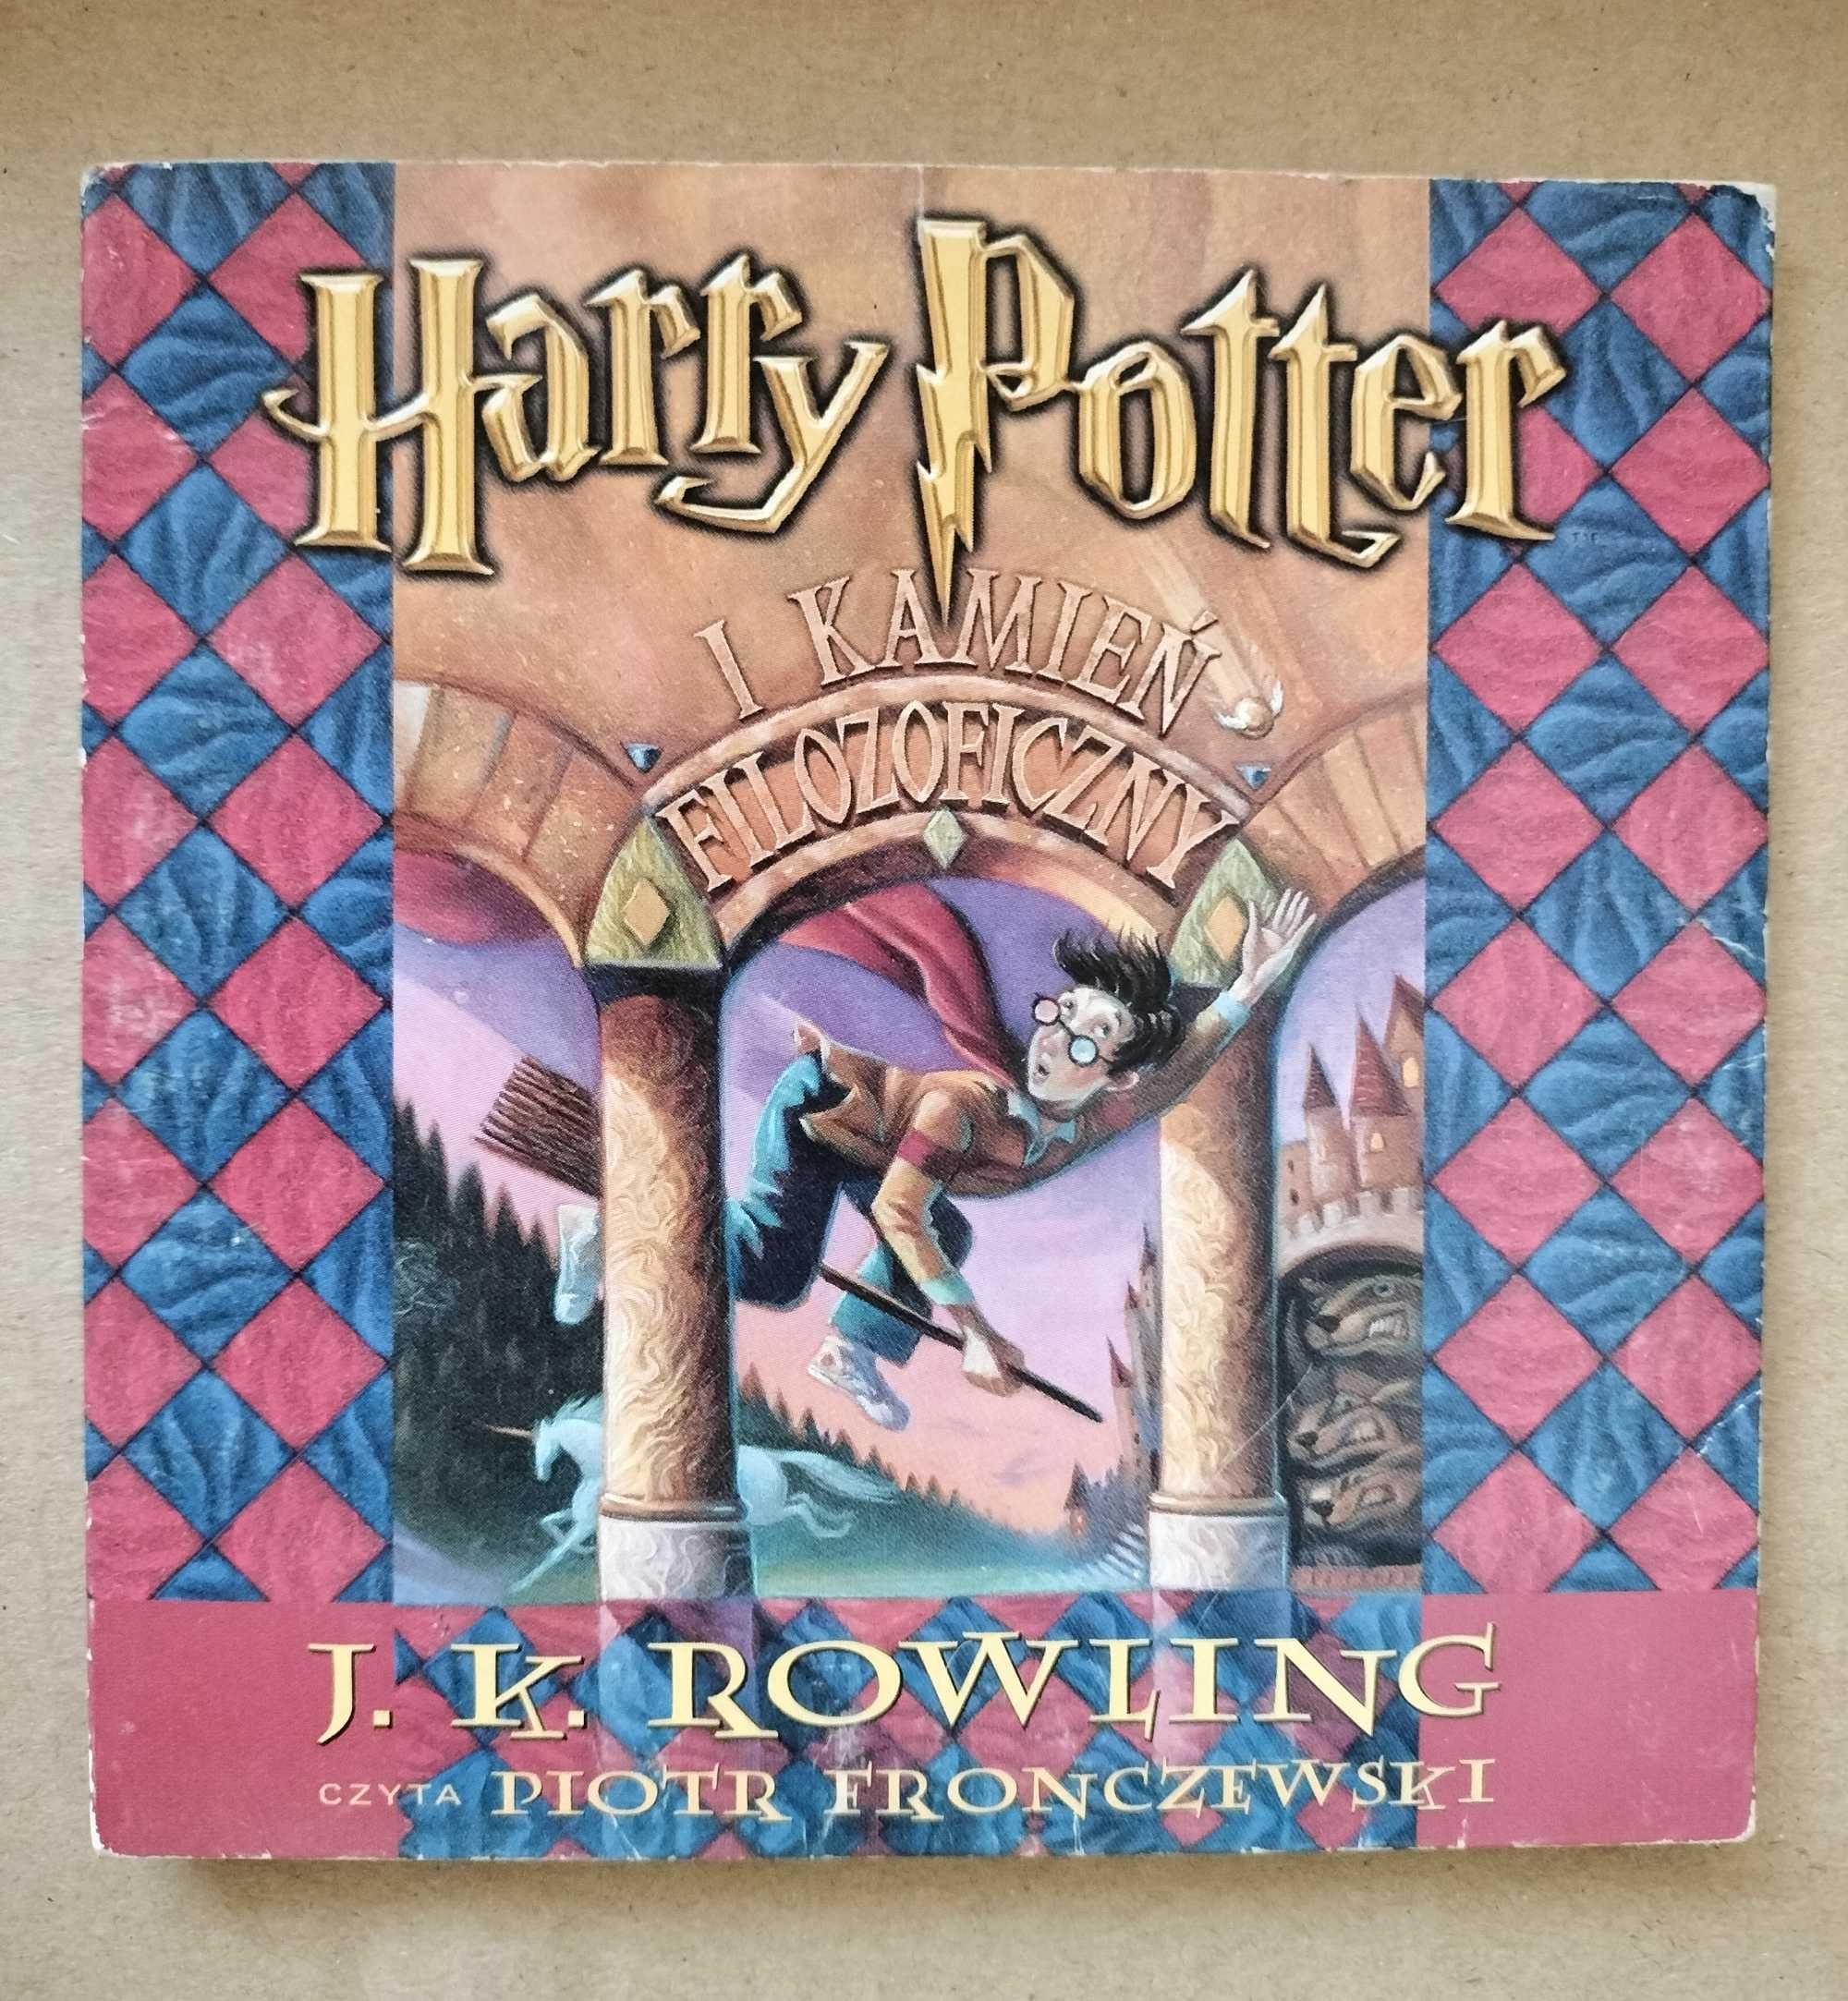 CD Harry Potter i kamień filozoficzny